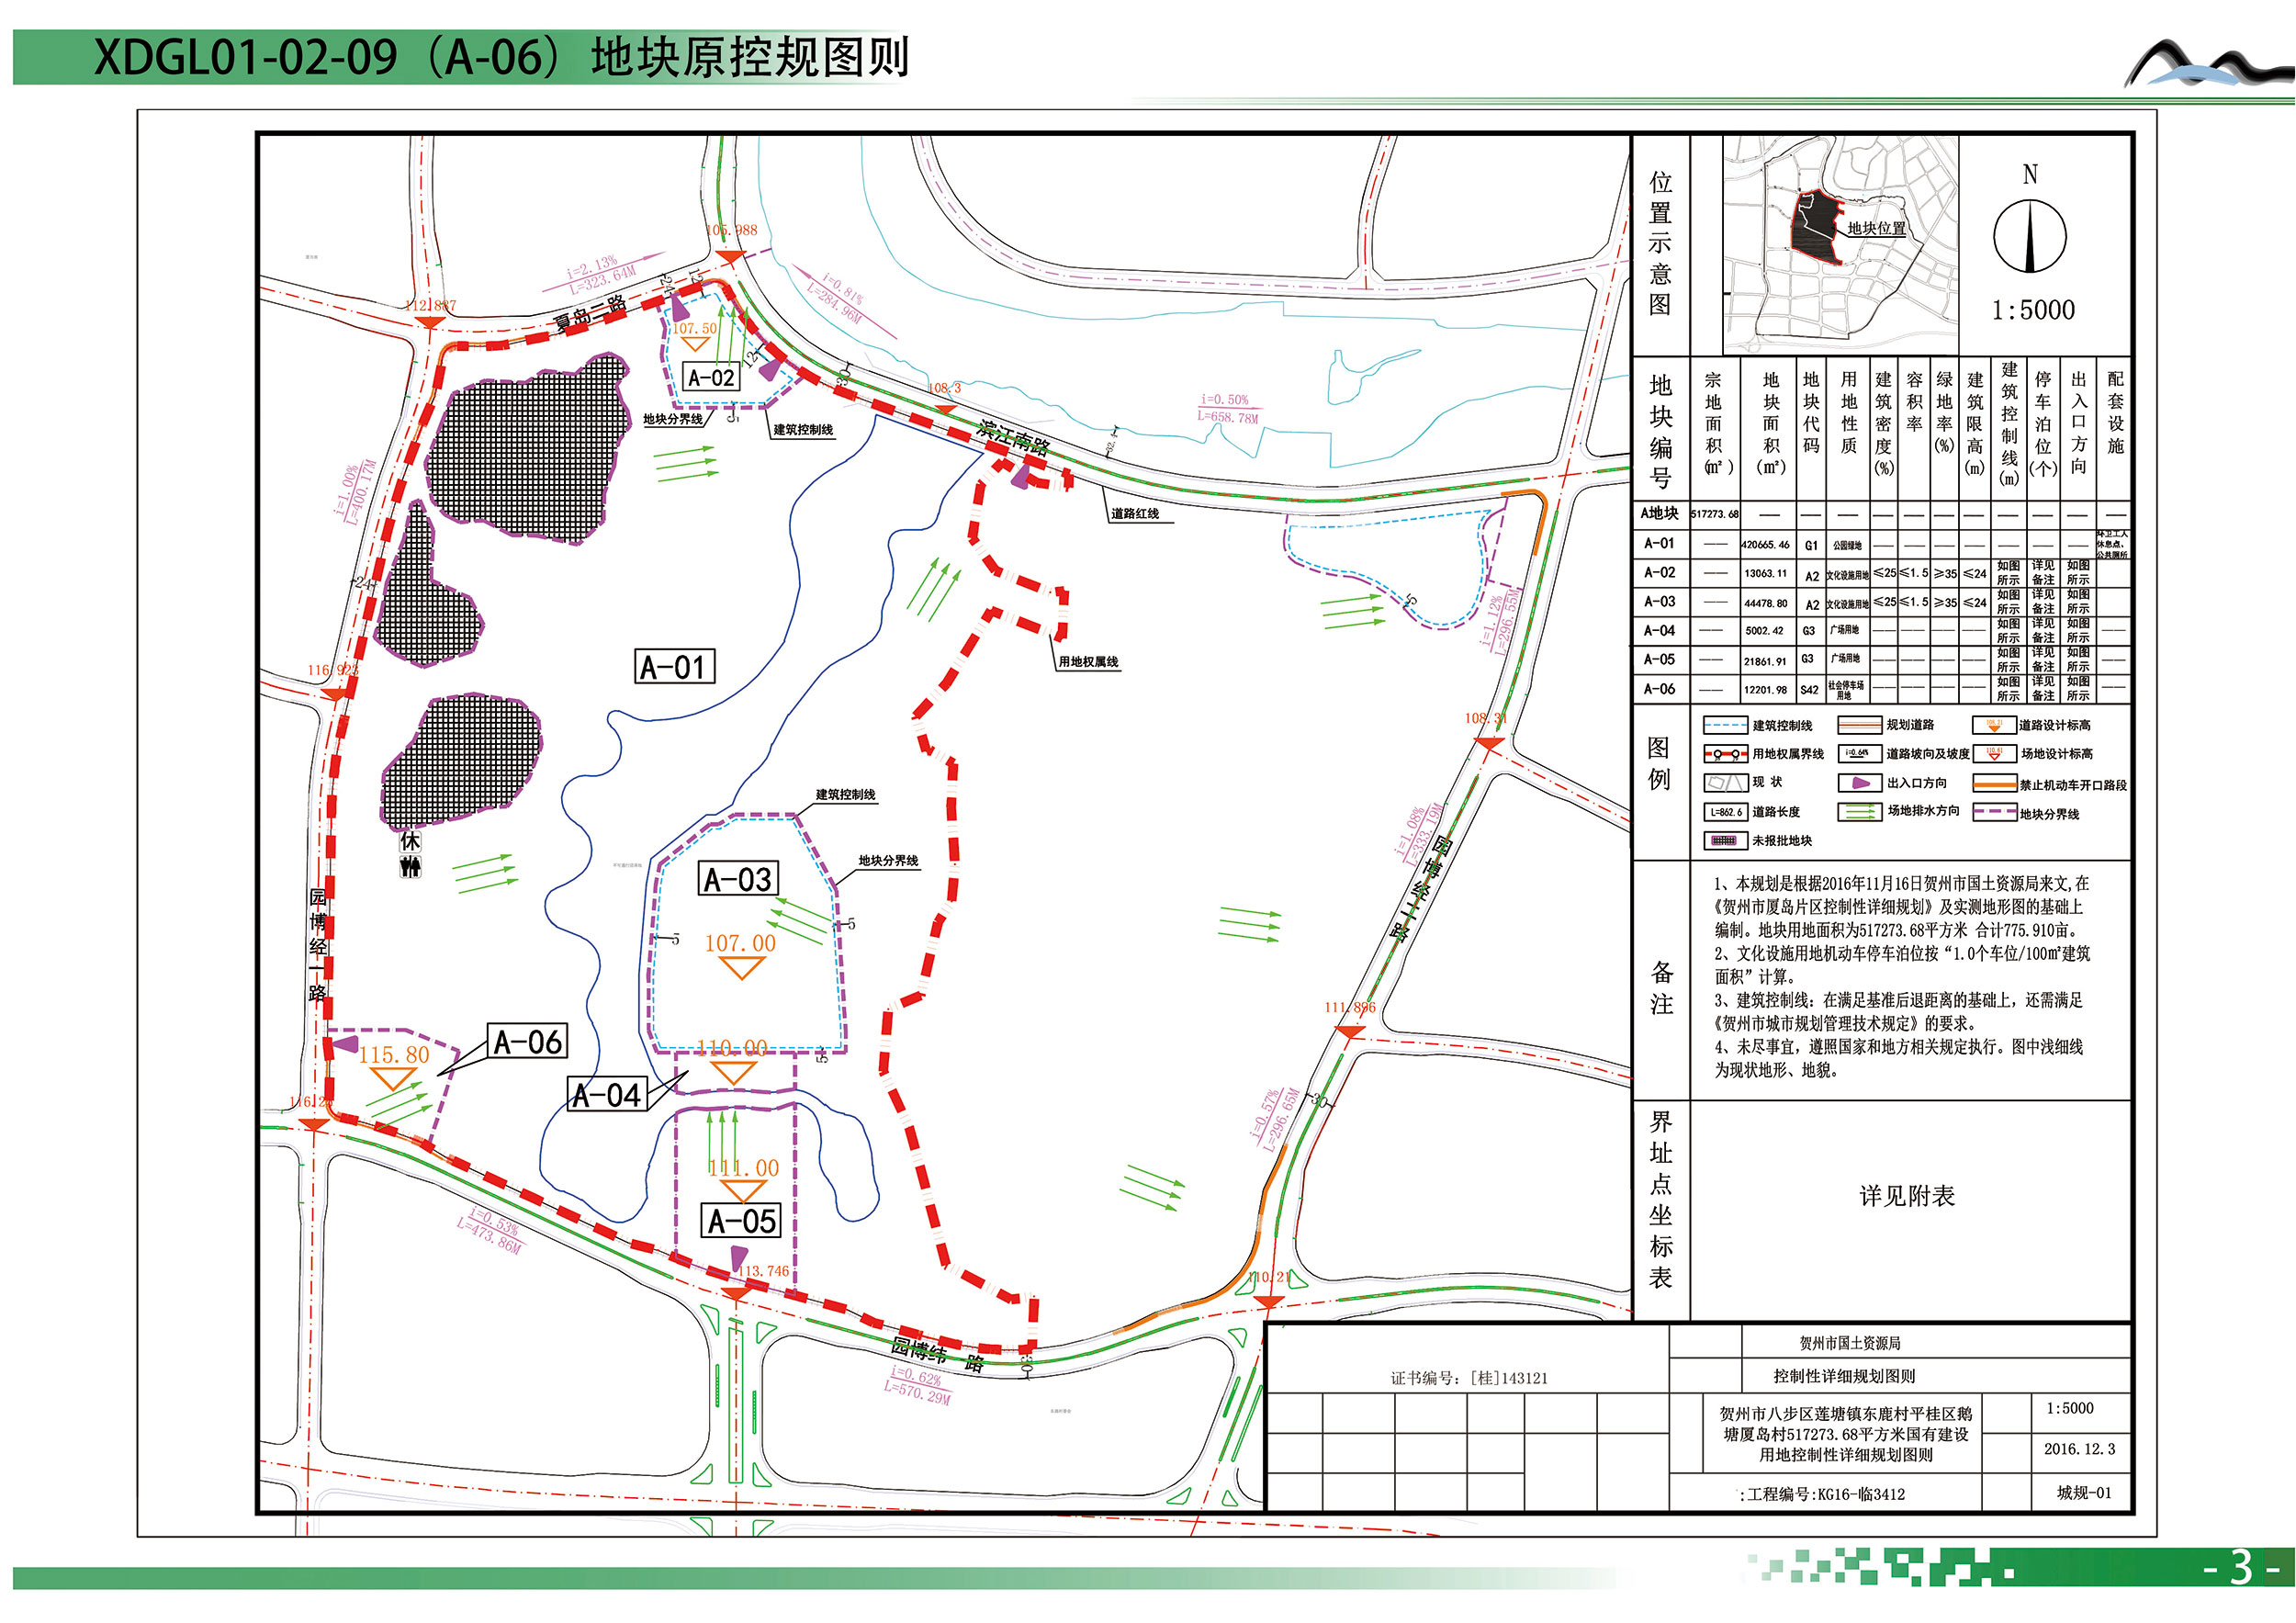 贺州市厦岛片区控制性详细规划dgl01-02-09地块调整图则批前公示